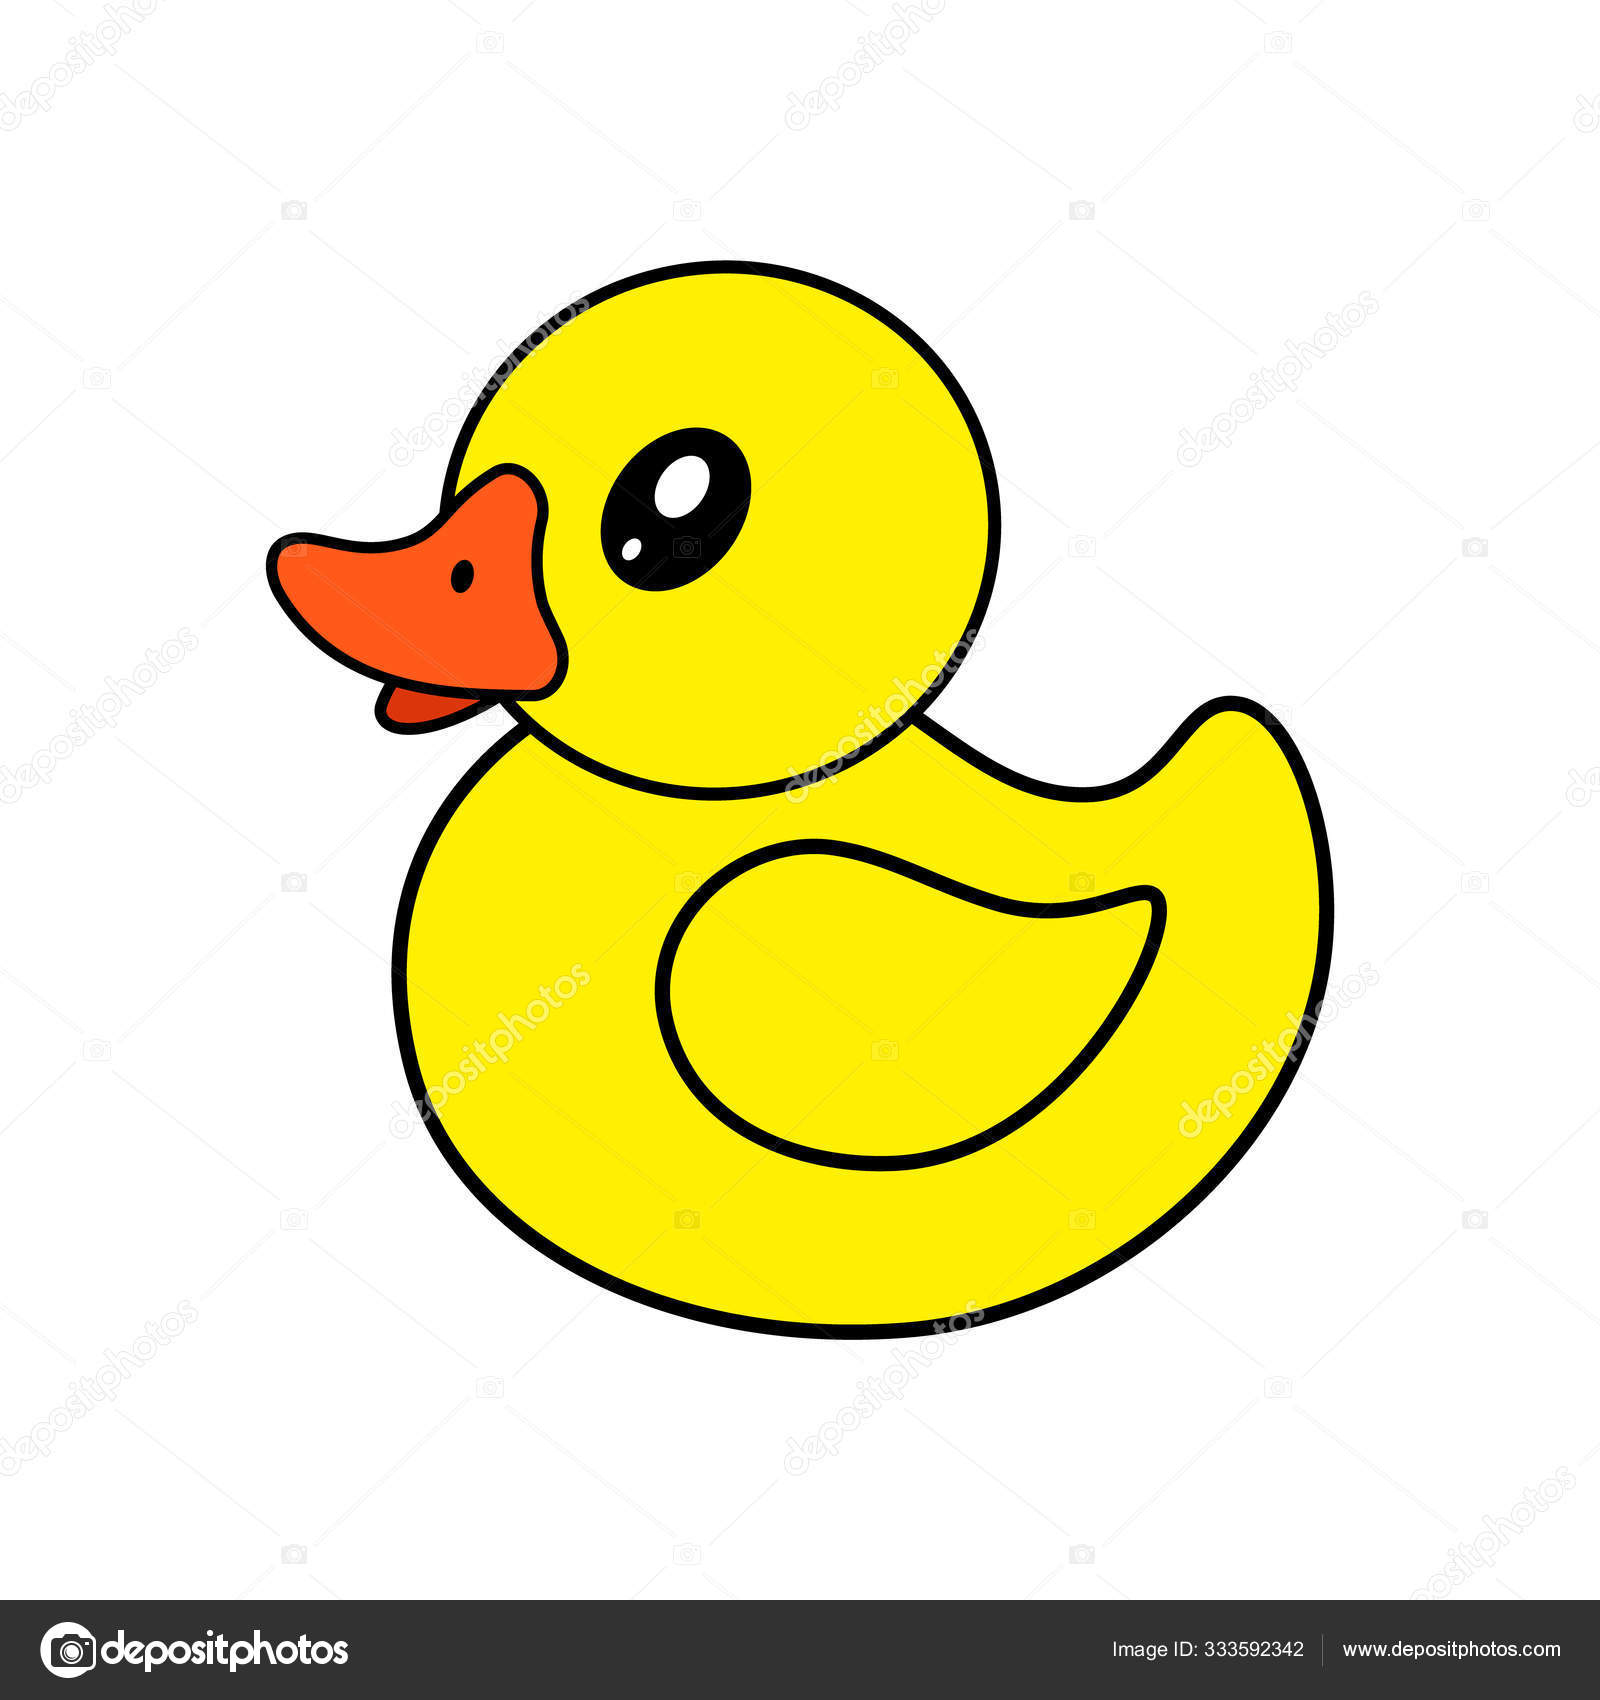 gelbe Ente, Stock Bild